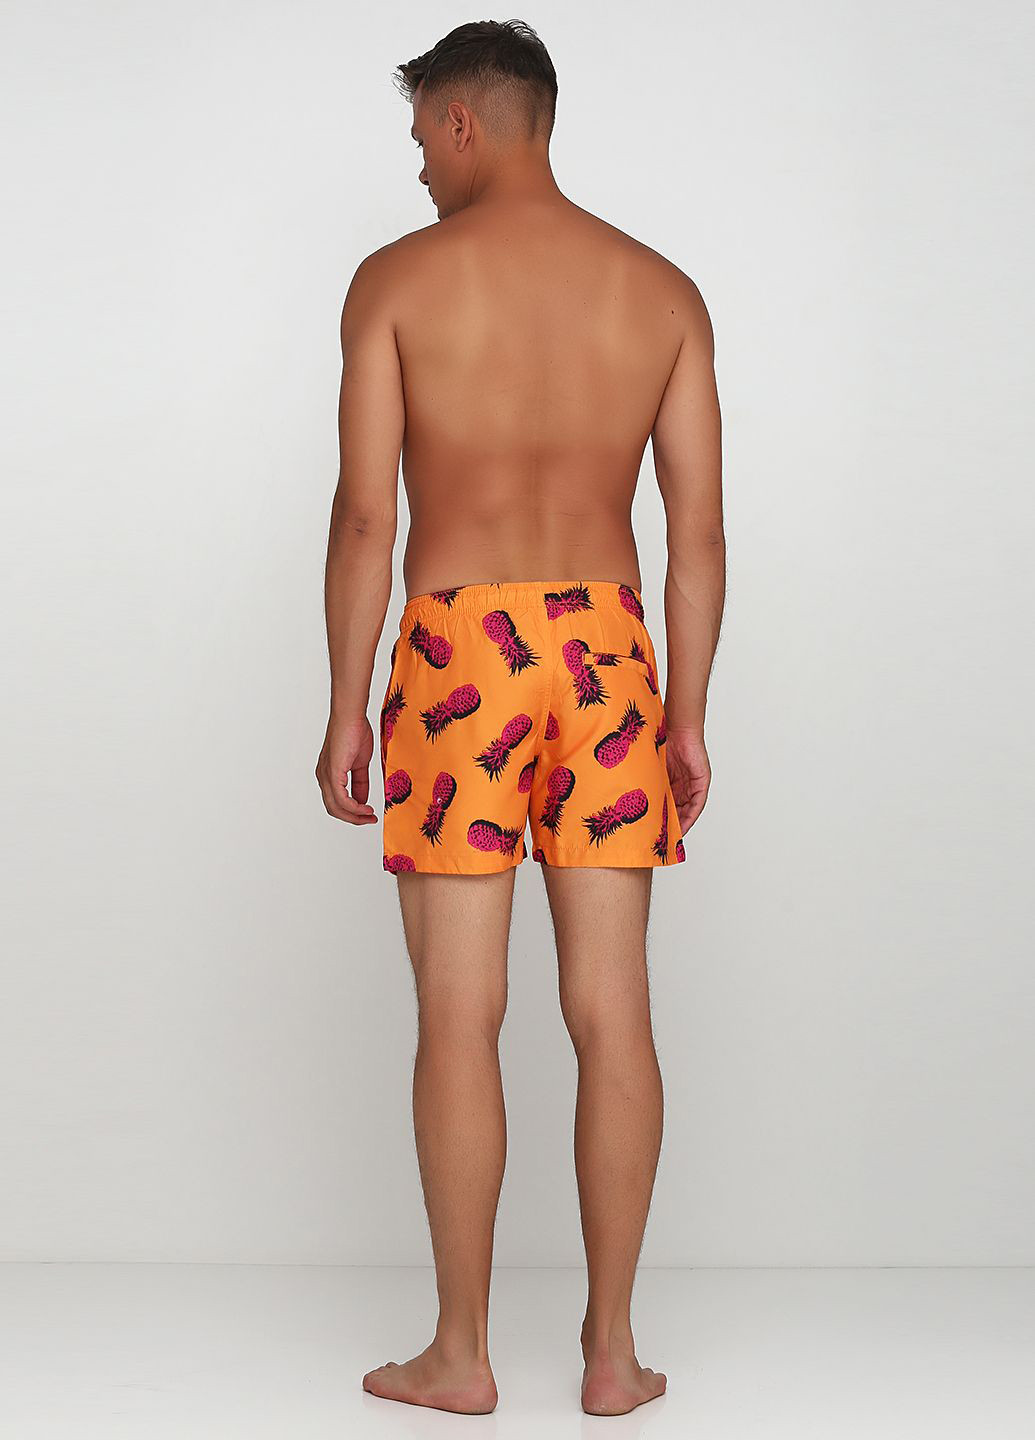 Шорты H&M рисунки оранжевые пляжные полиэстер